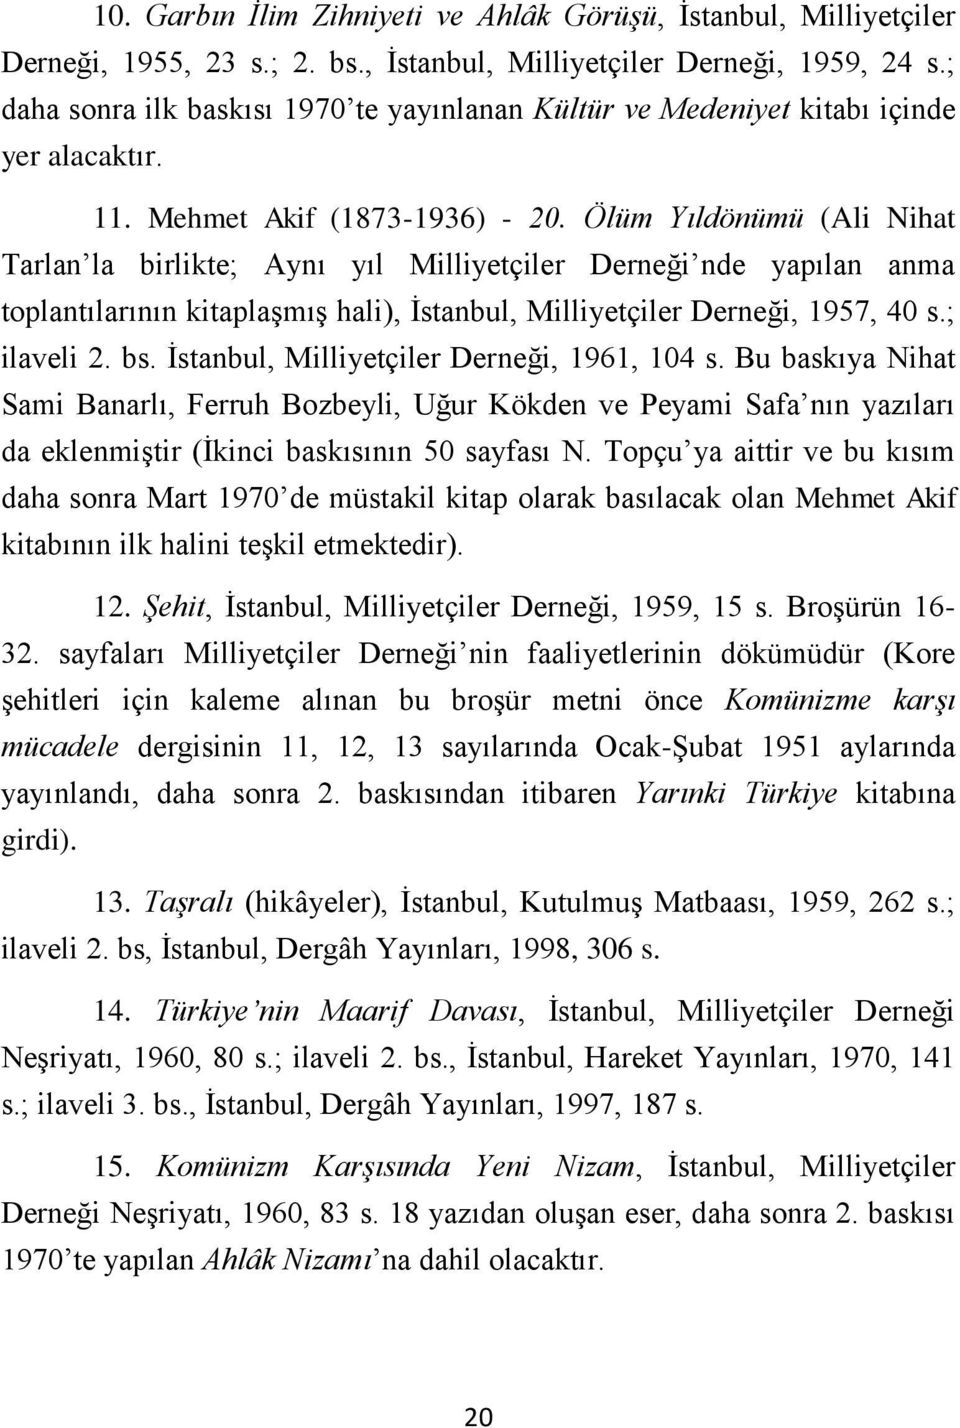 Ölüm Yıldönümü (Ali Nihat Tarlan la birlikte; Aynı yıl Milliyetçiler Derneği nde yapılan anma toplantılarının kitaplaşmış hali), İstanbul, Milliyetçiler Derneği, 1957, 40 s.; ilaveli 2. bs.